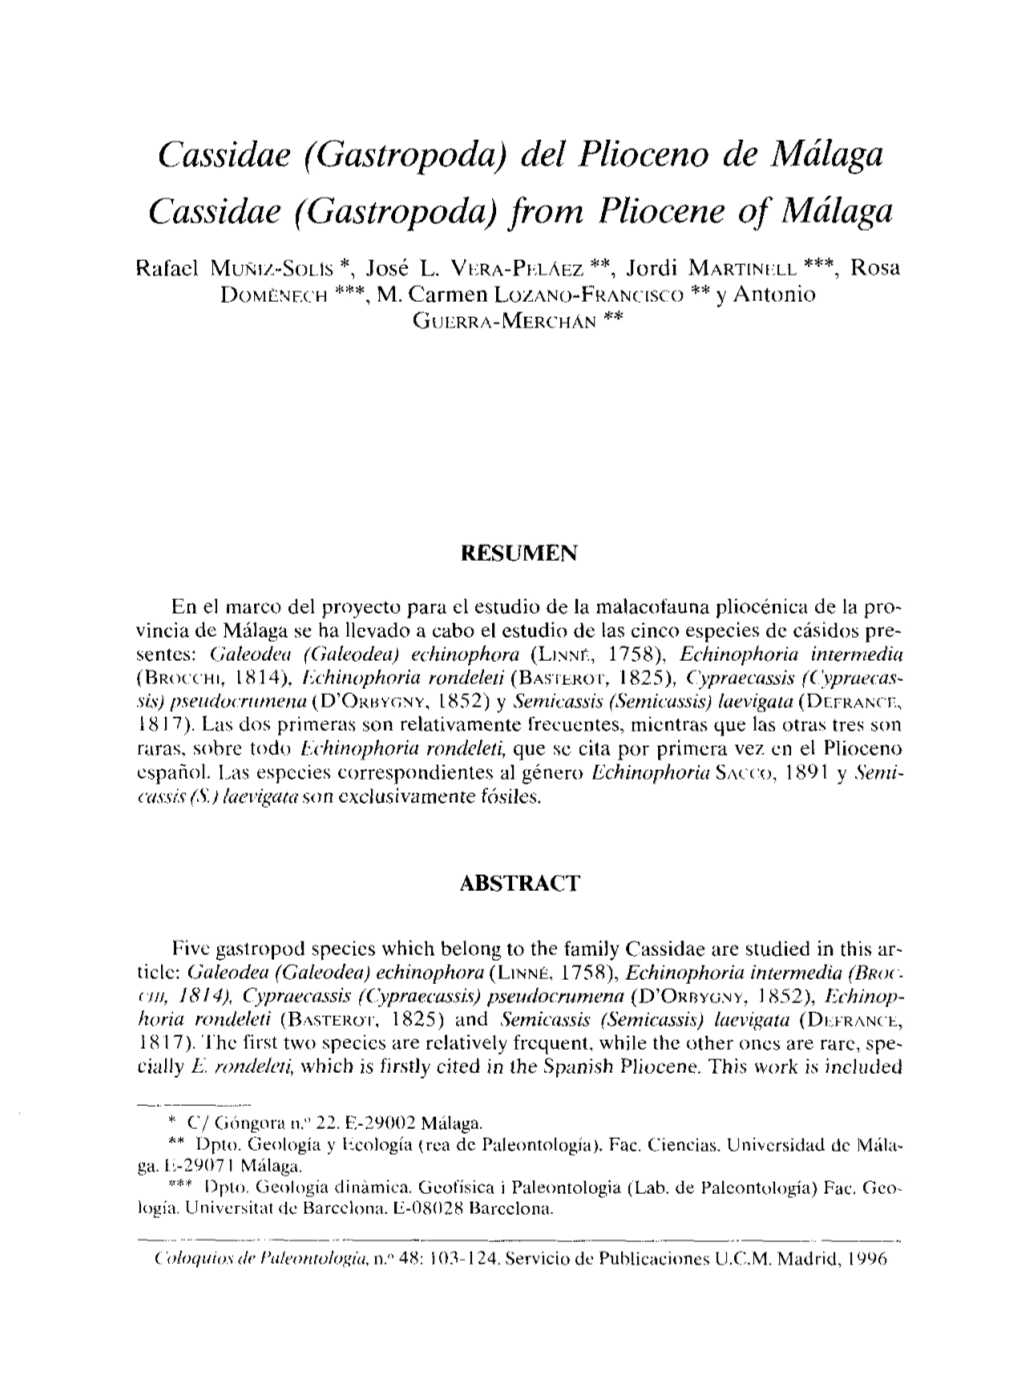 Cassidae (Gastropoda) Del Plioceno De Málaga Gassidae (Gastropoda~ from Pliocene of Málaga